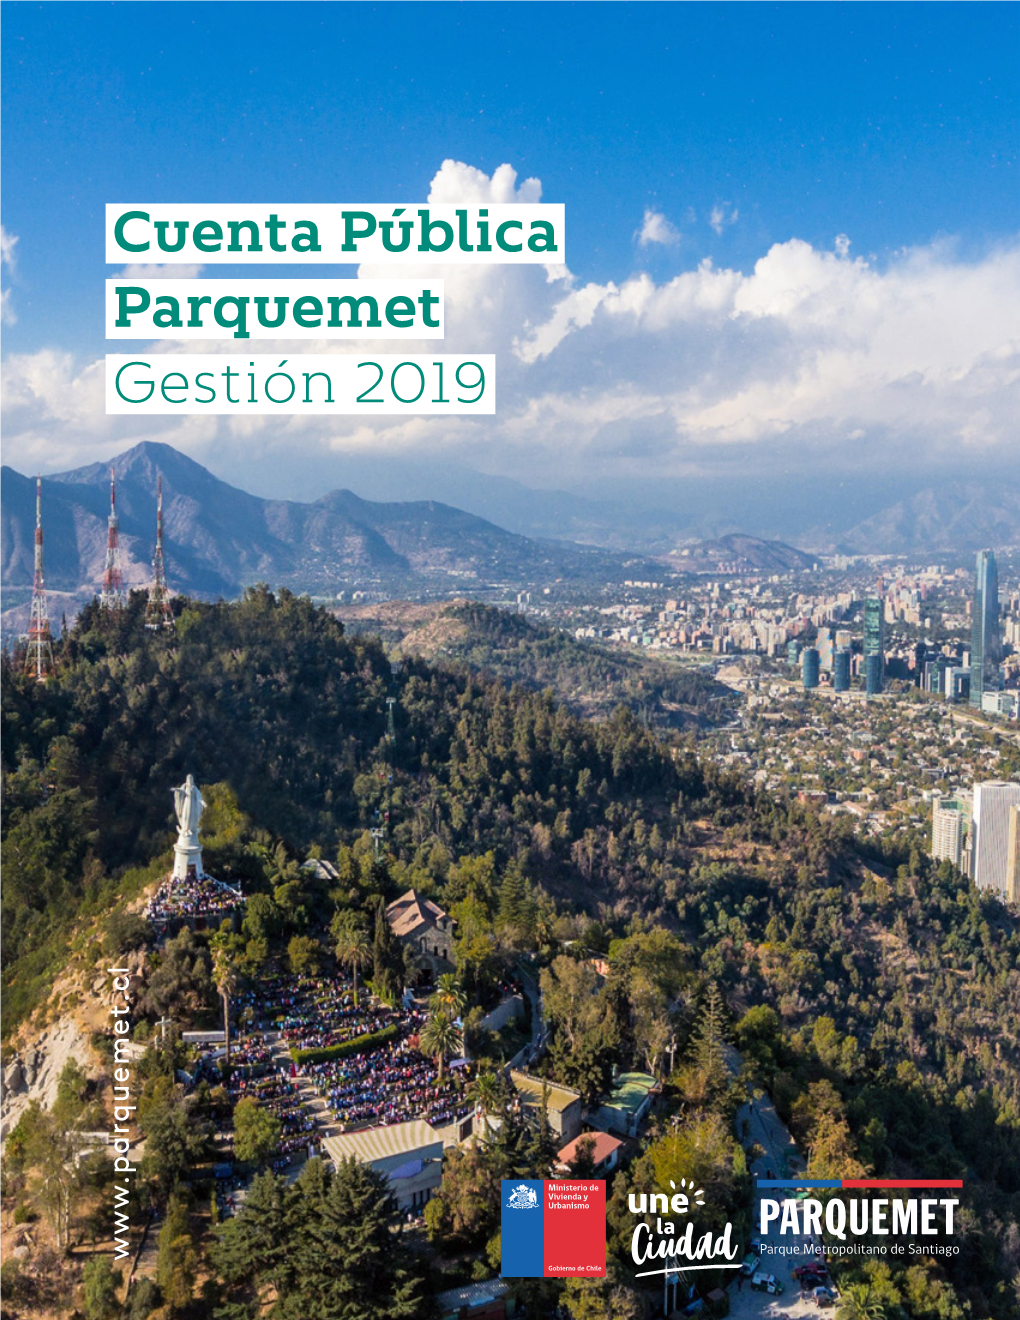 Cuenta Pública Parquemet Gestión 2019